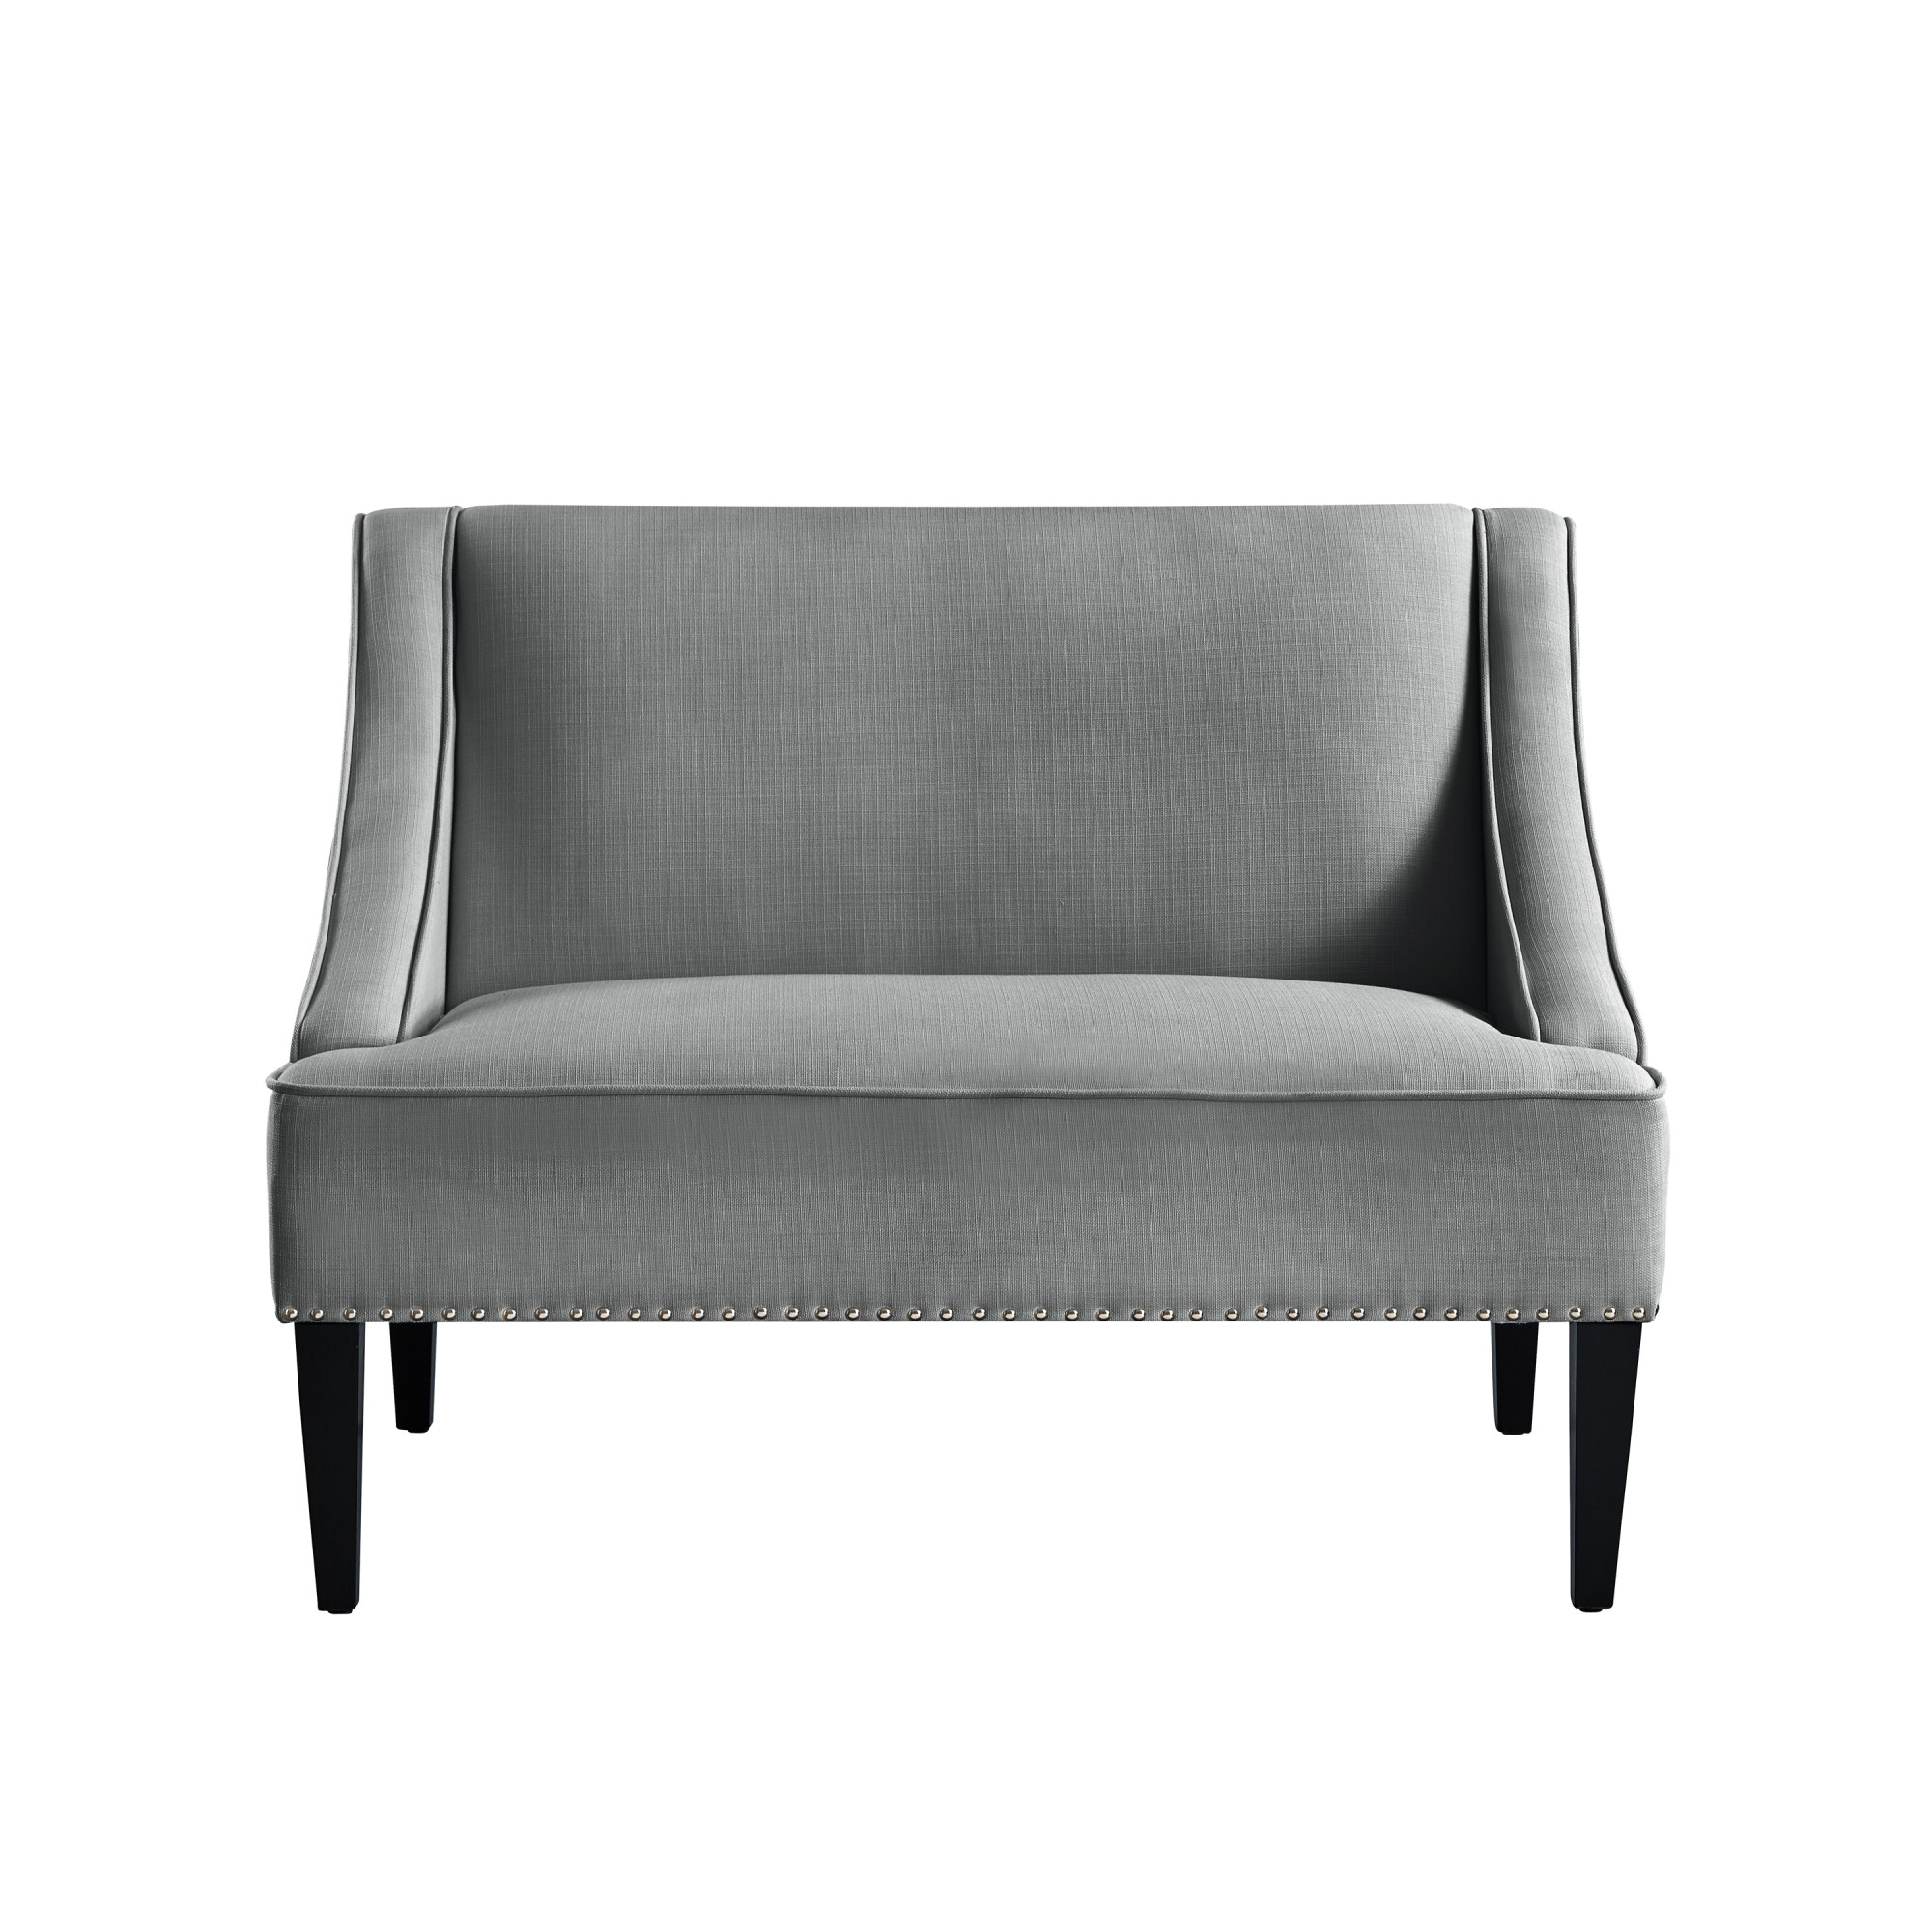 45" Light Gray And Black Upholstered Linen Bench-490924-1